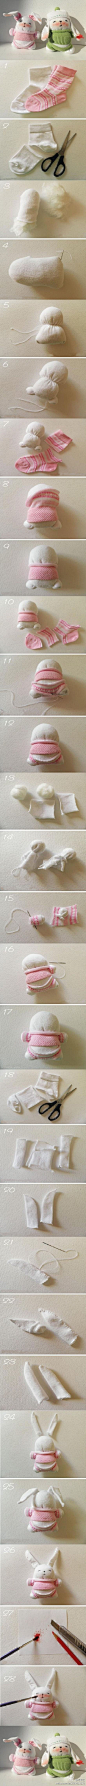 【DIY手工】小袜子就能制成的可爱小兔子教程